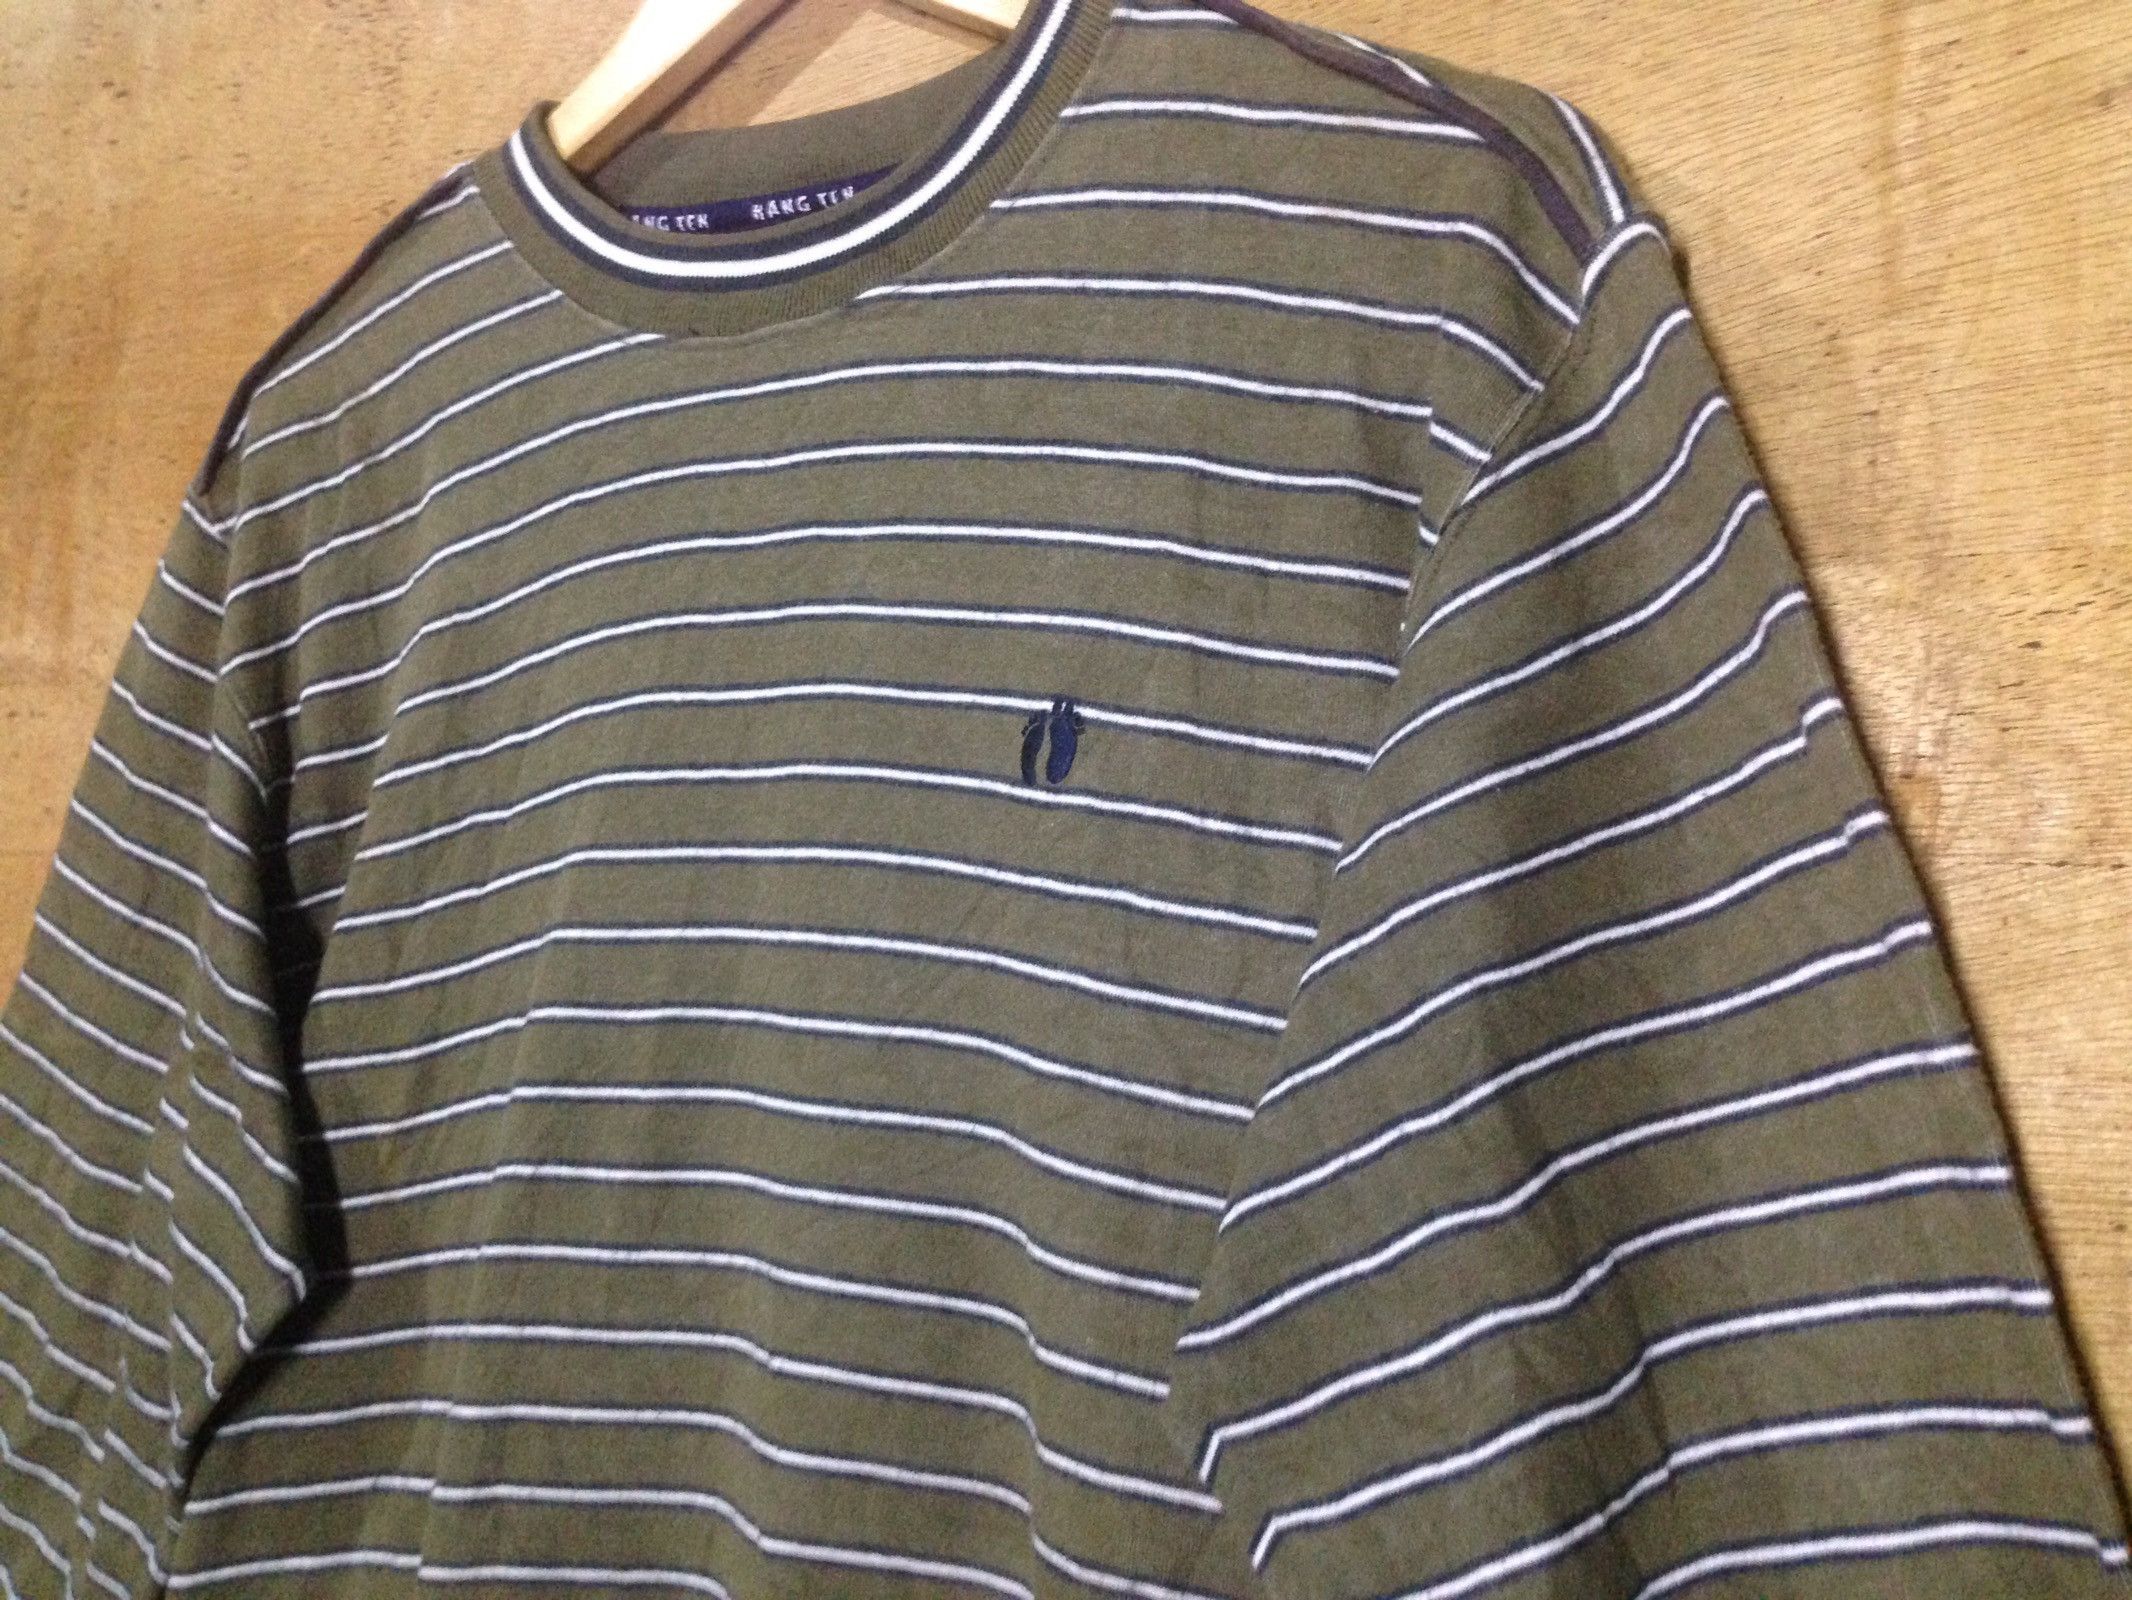 Hang Ten Stripe Pullover Jumper - 0001 - 4